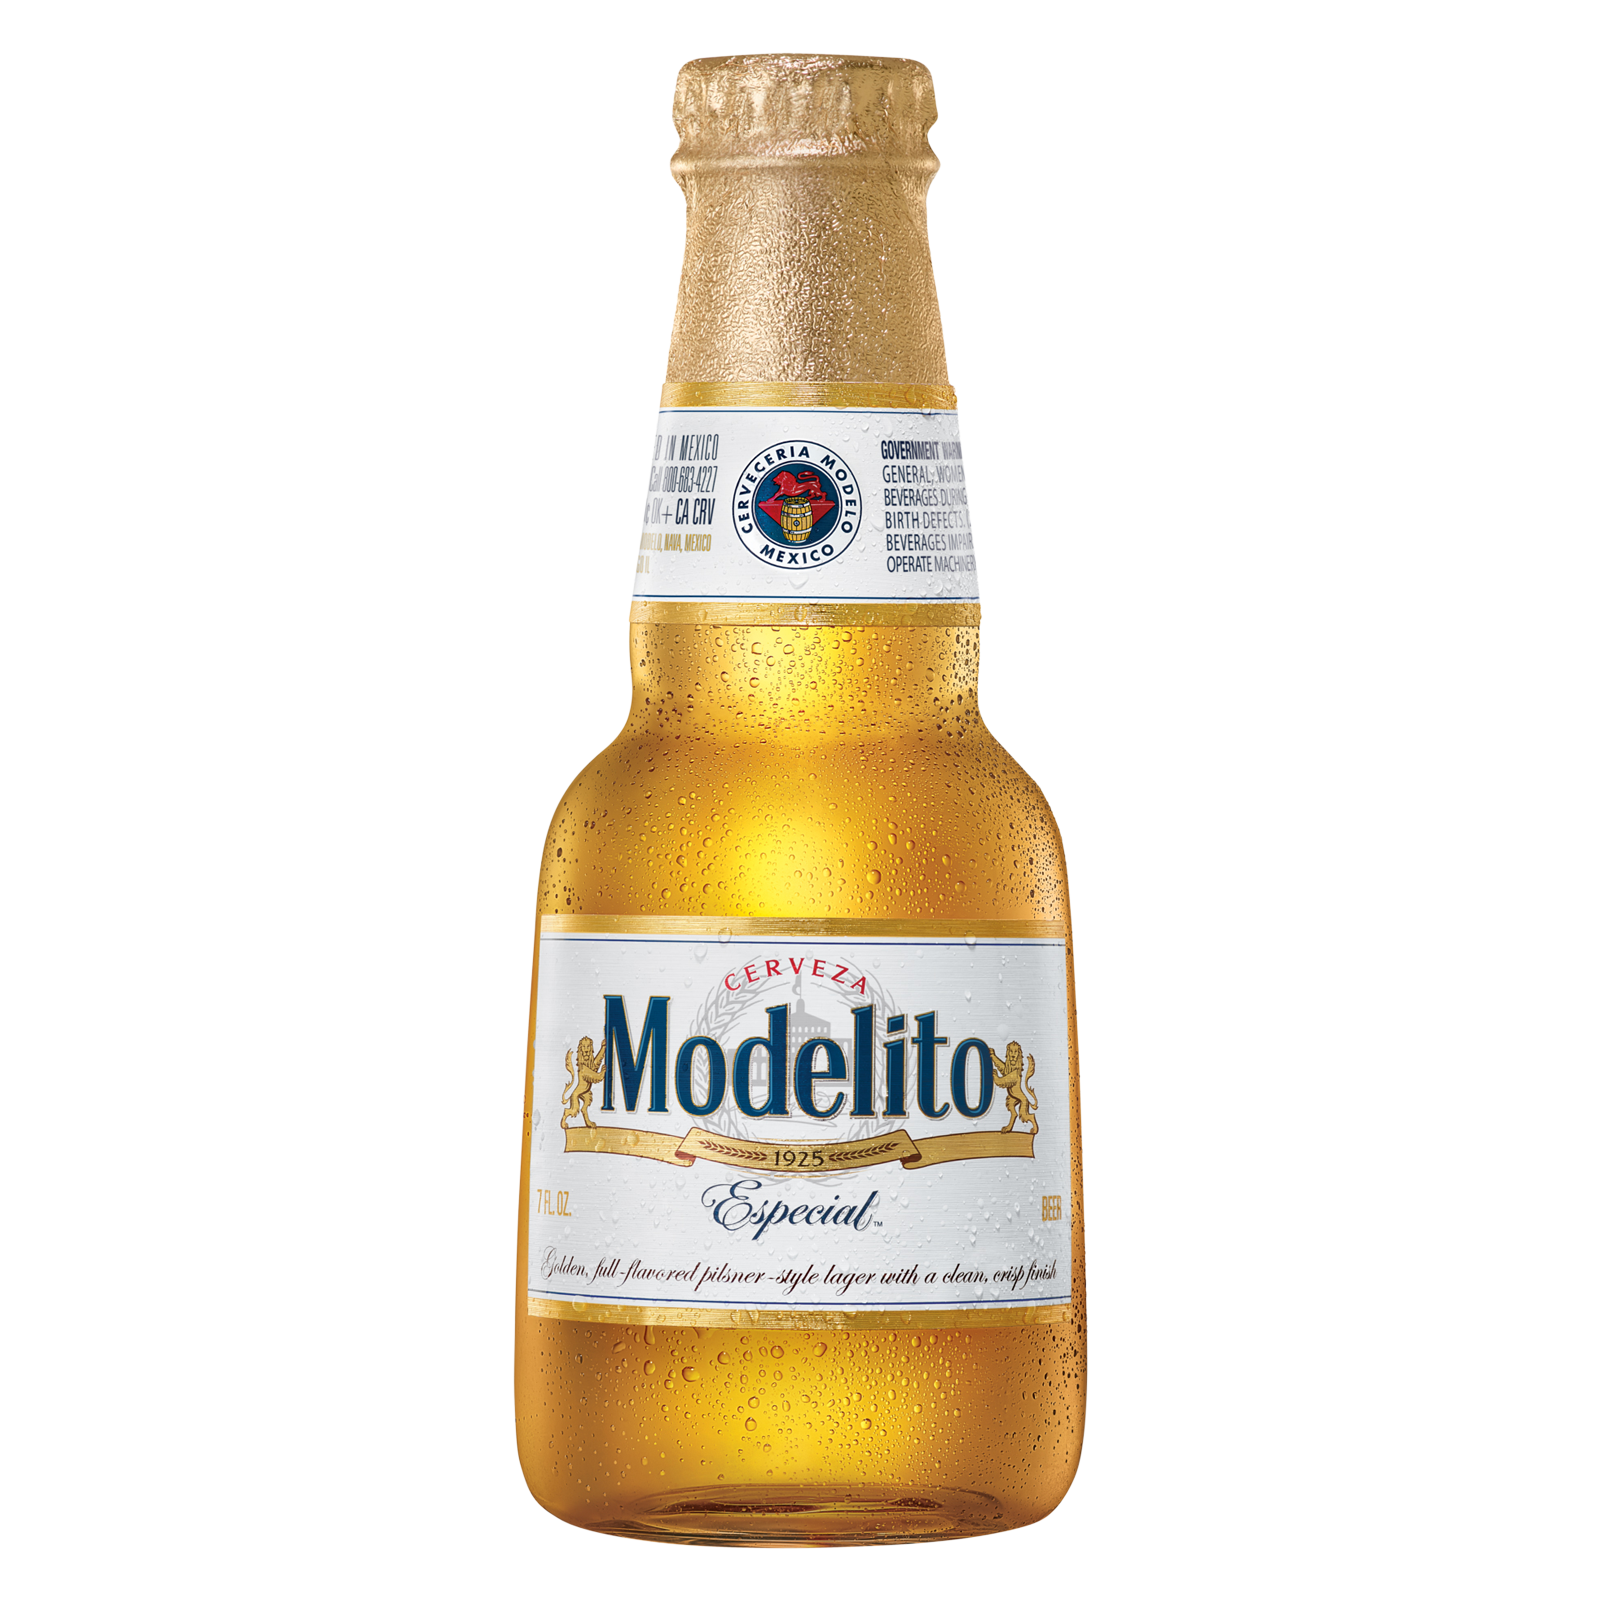 Modelo Especial Modelito Single 7oz bottle 4.4% ABV